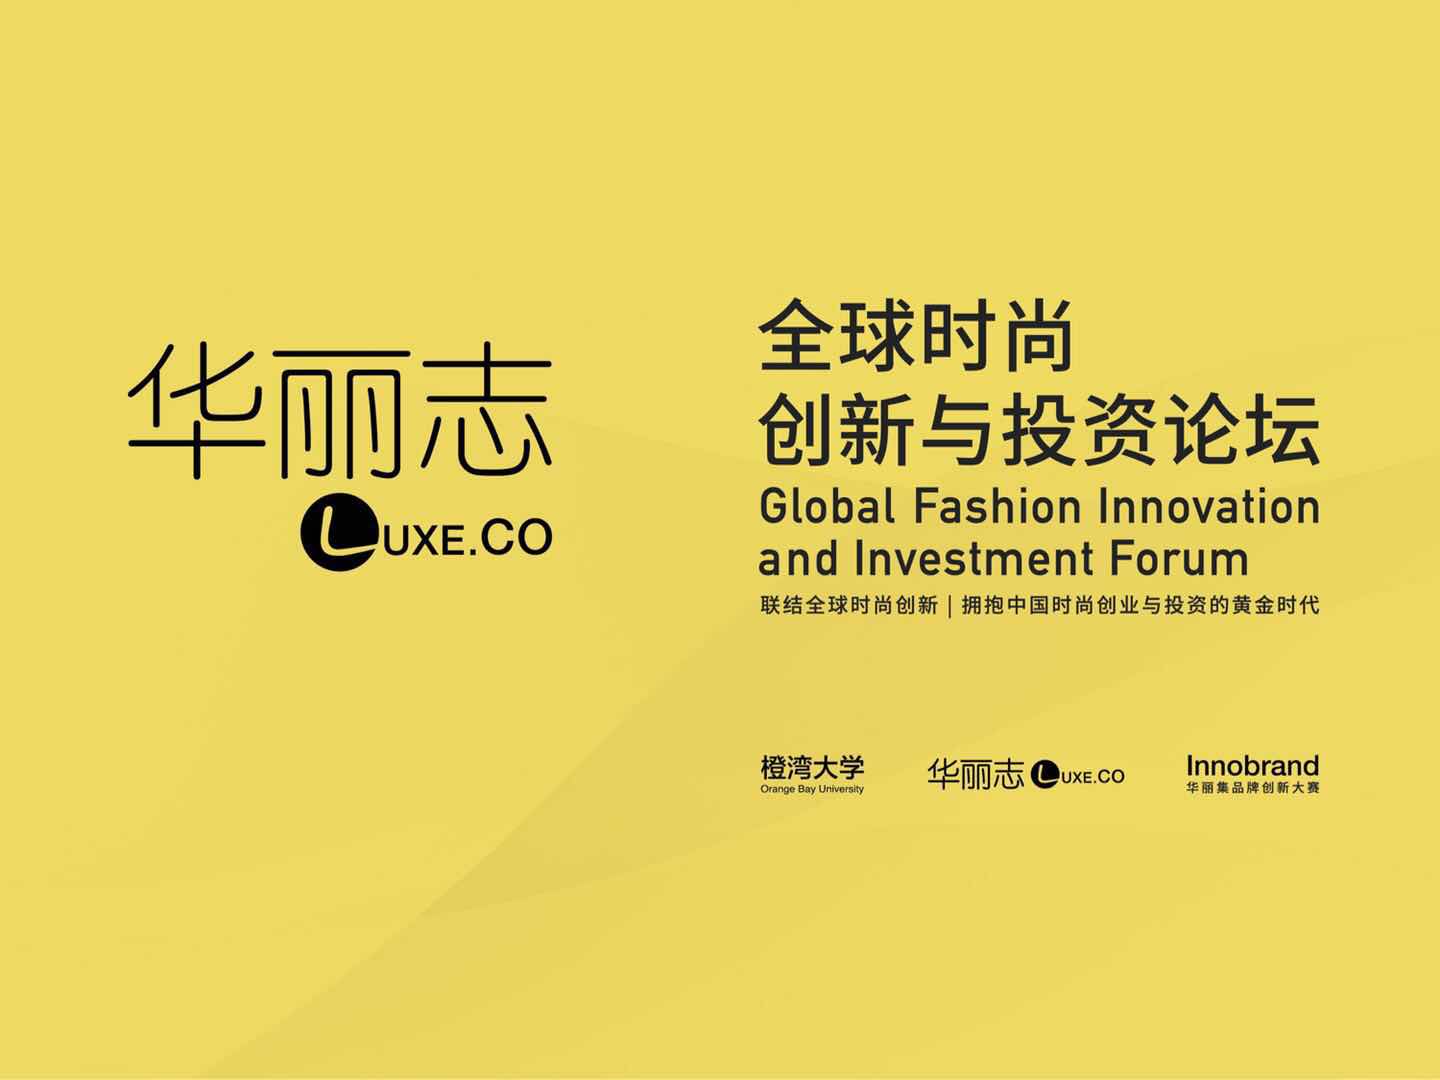 “华丽志全球时尚创新与投资论坛”图文快报（2018年4月18日，北京）：拥抱中国时尚创业与投资的黄金时代！